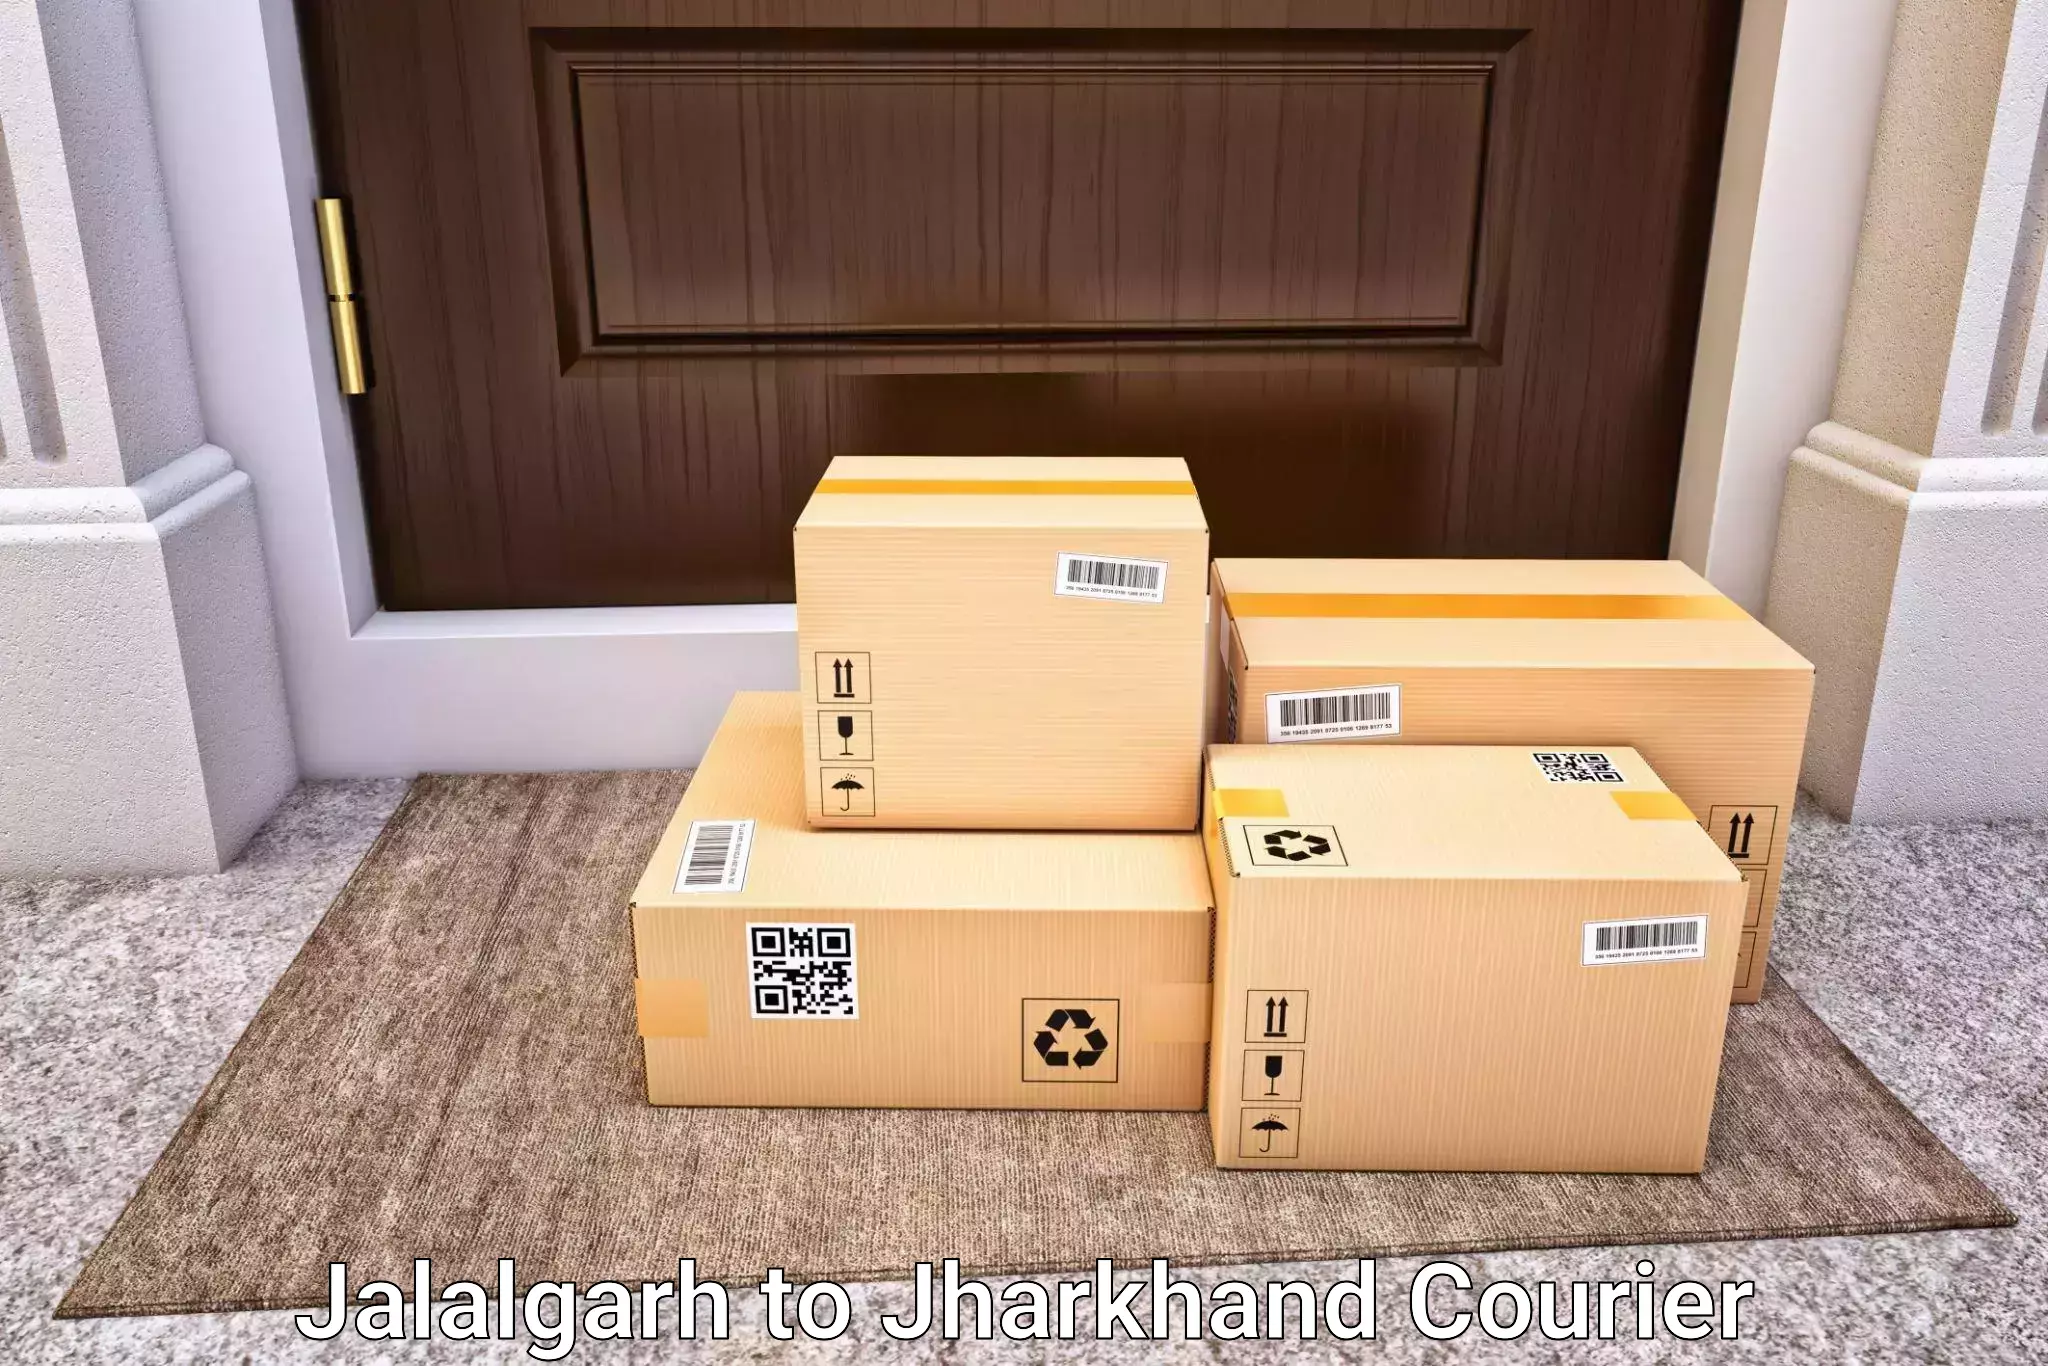 Luggage delivery logistics Jalalgarh to Dhalbhumgarh